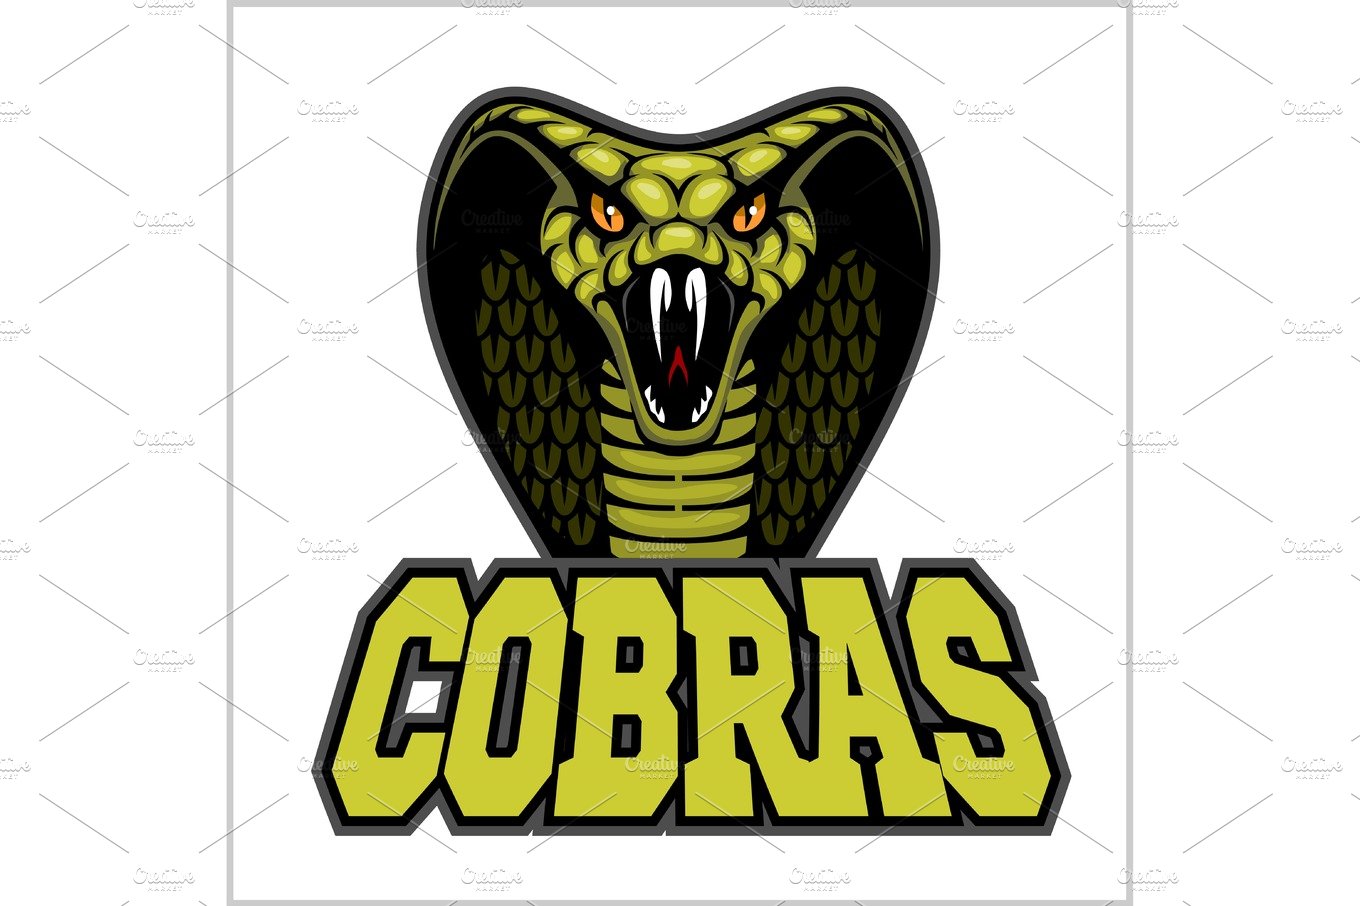 cobras green banner illustration design colorful cover image.